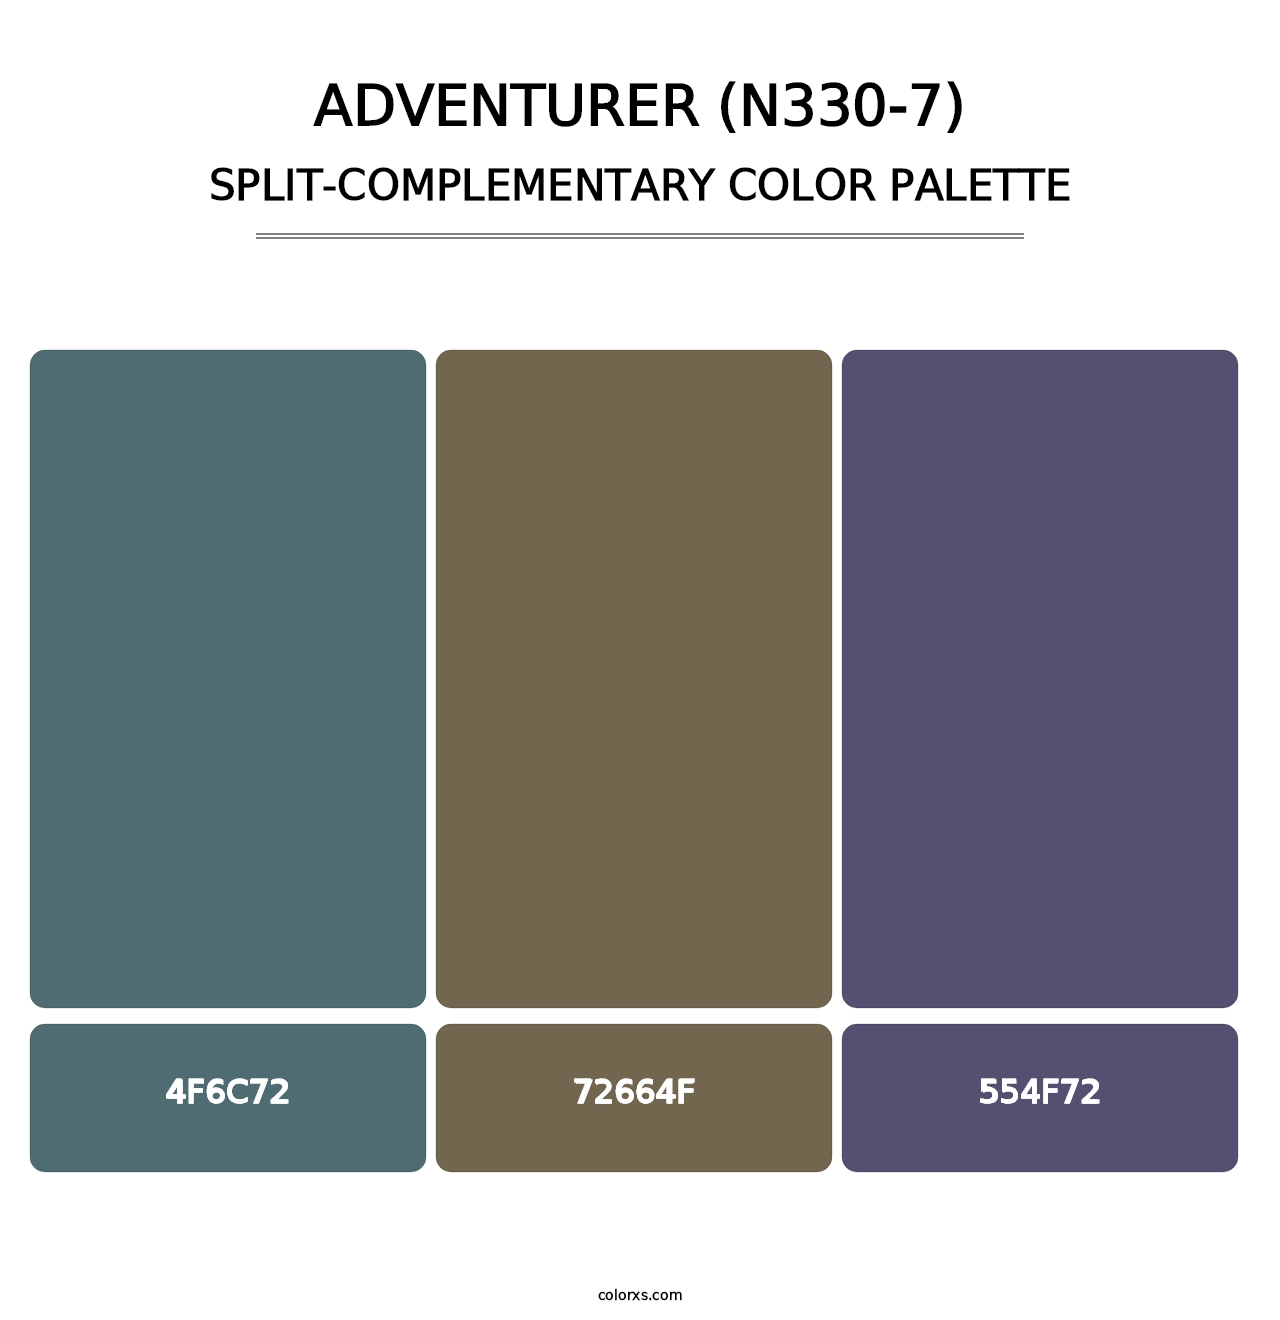 Adventurer (N330-7) - Split-Complementary Color Palette